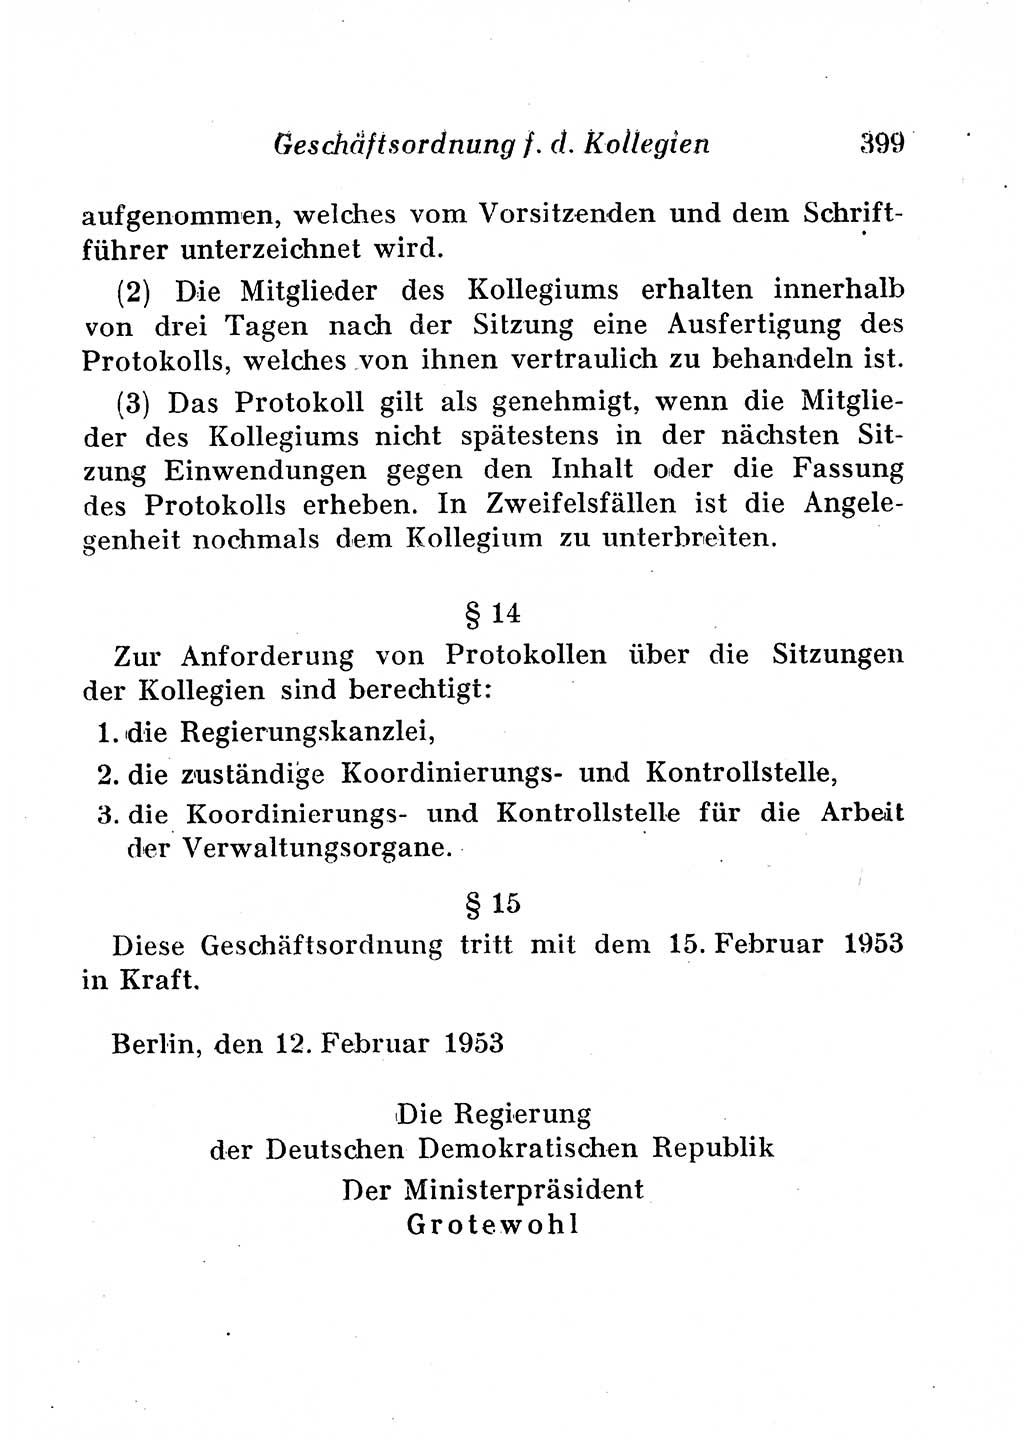 Staats- und verwaltungsrechtliche Gesetze der Deutschen Demokratischen Republik (DDR) 1958, Seite 399 (StVerwR Ges. DDR 1958, S. 399)